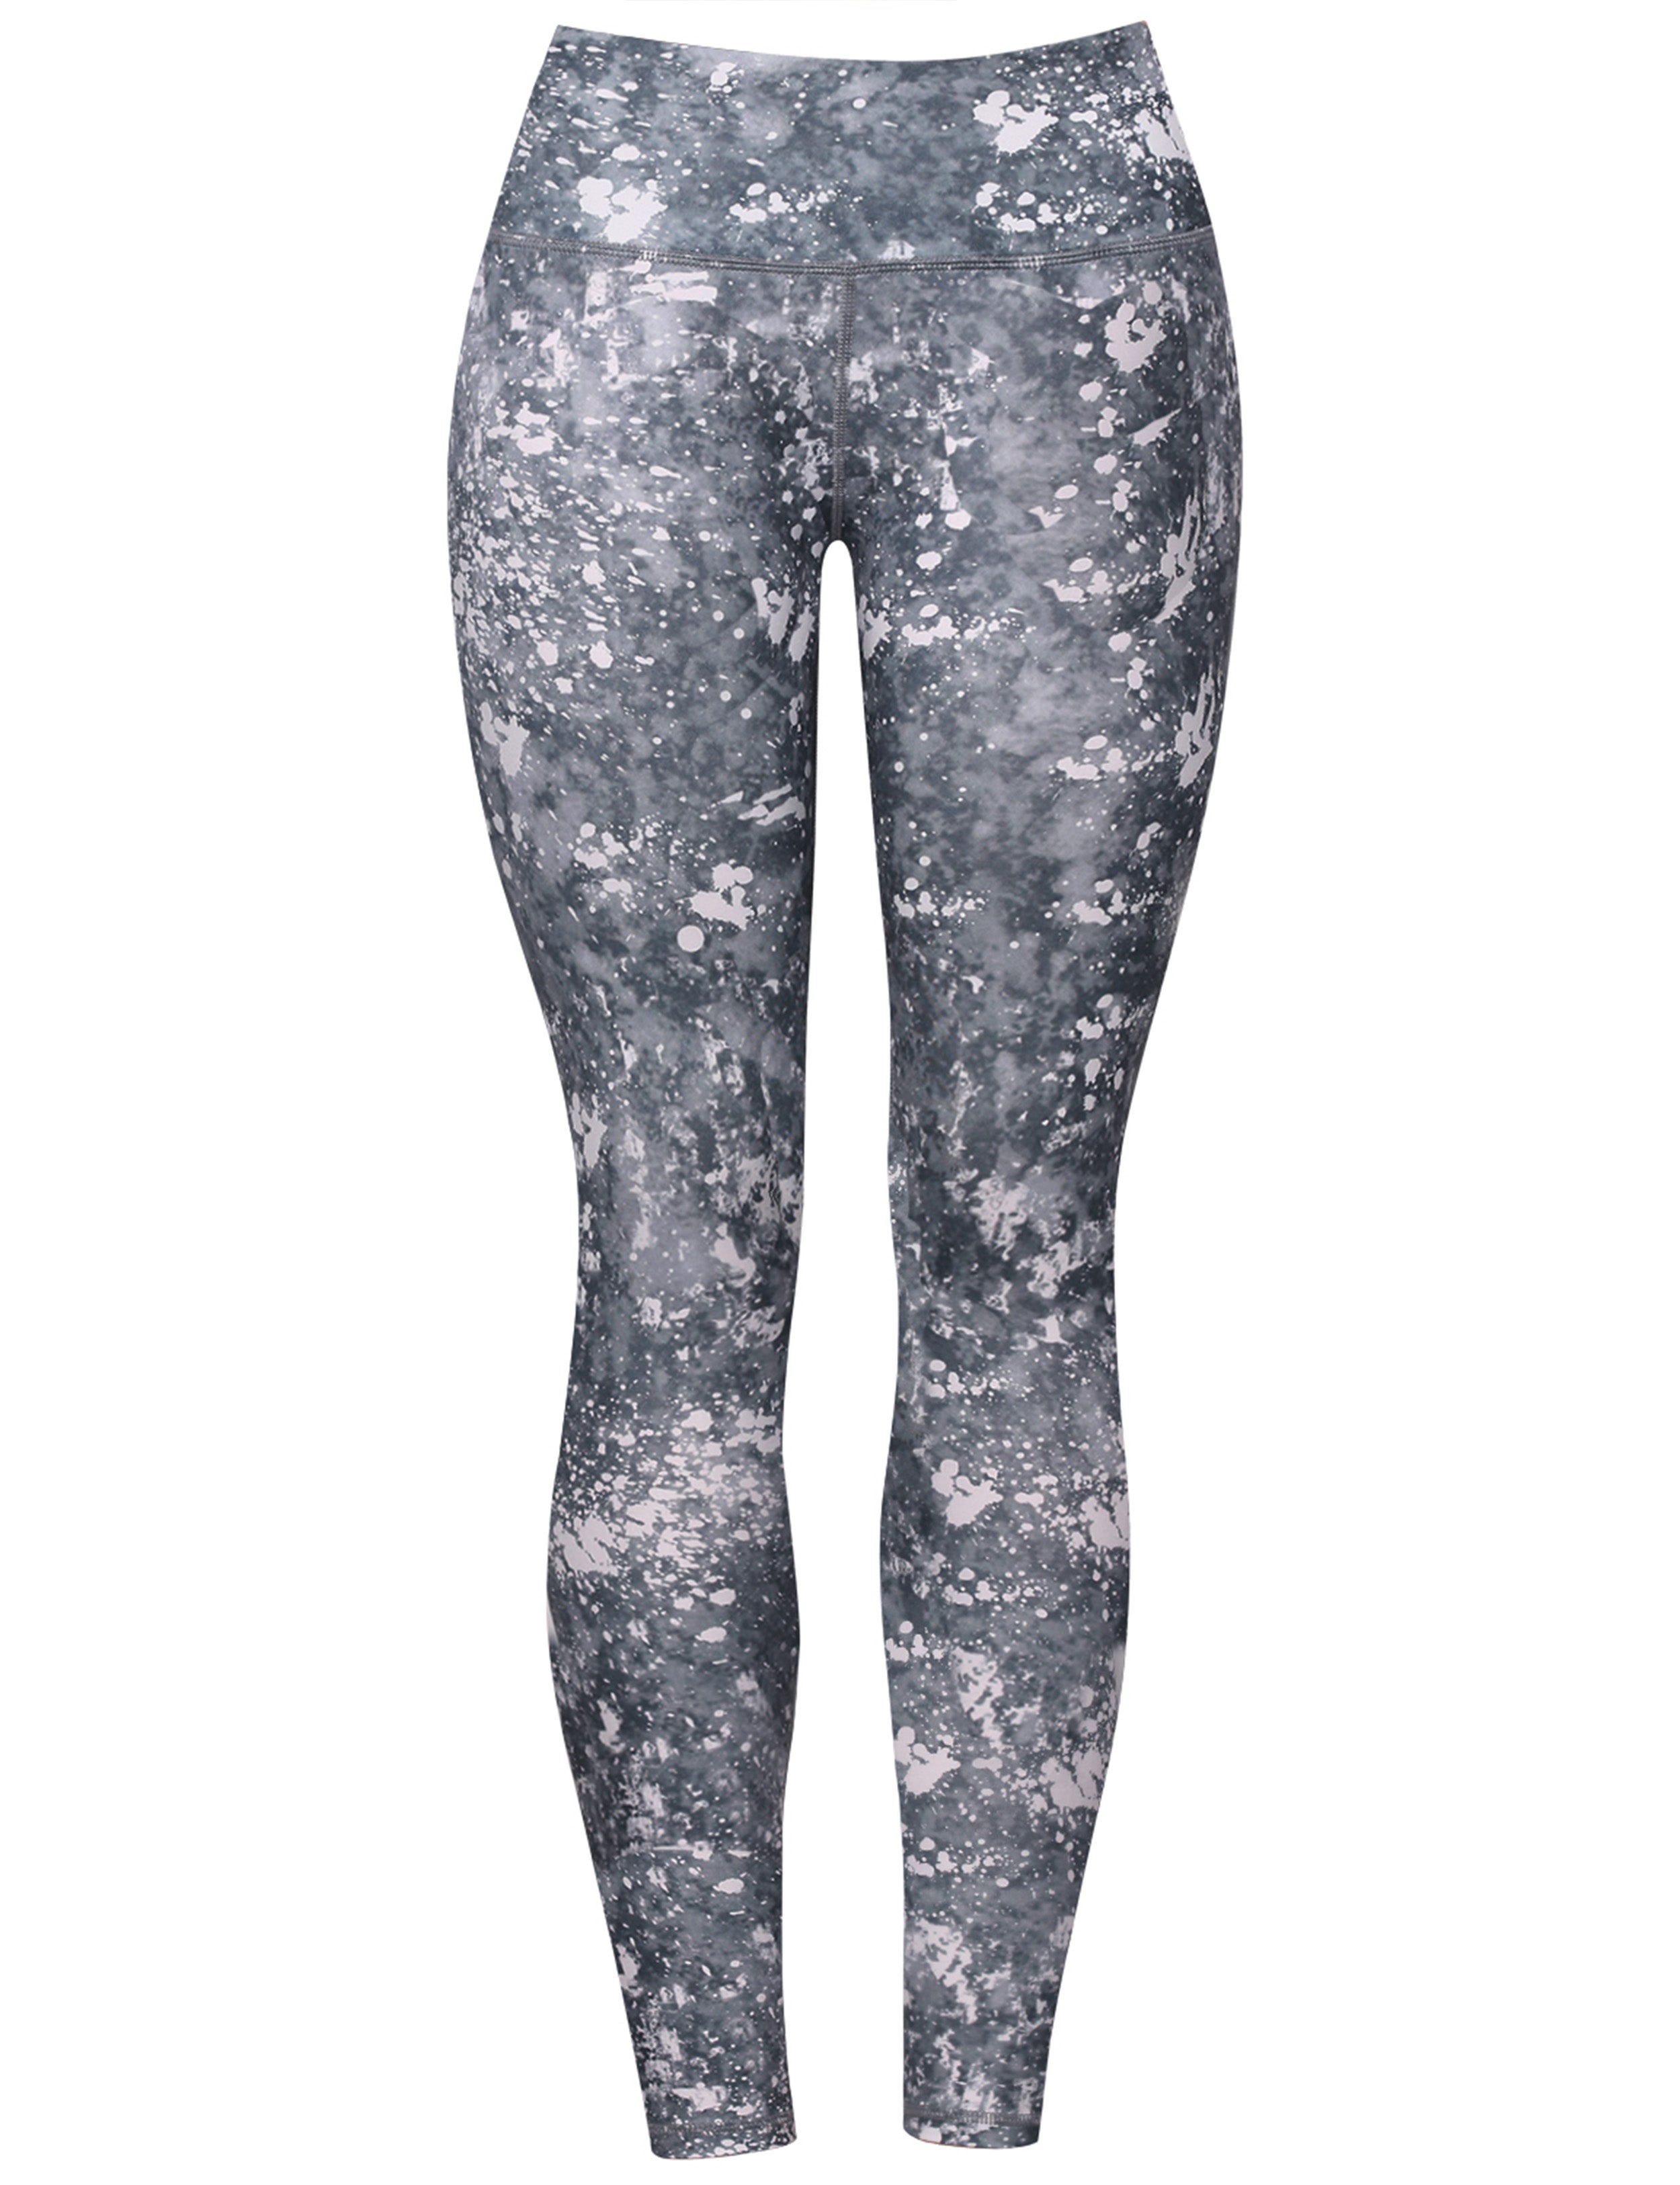 26" Printed Yoga Pants LIME